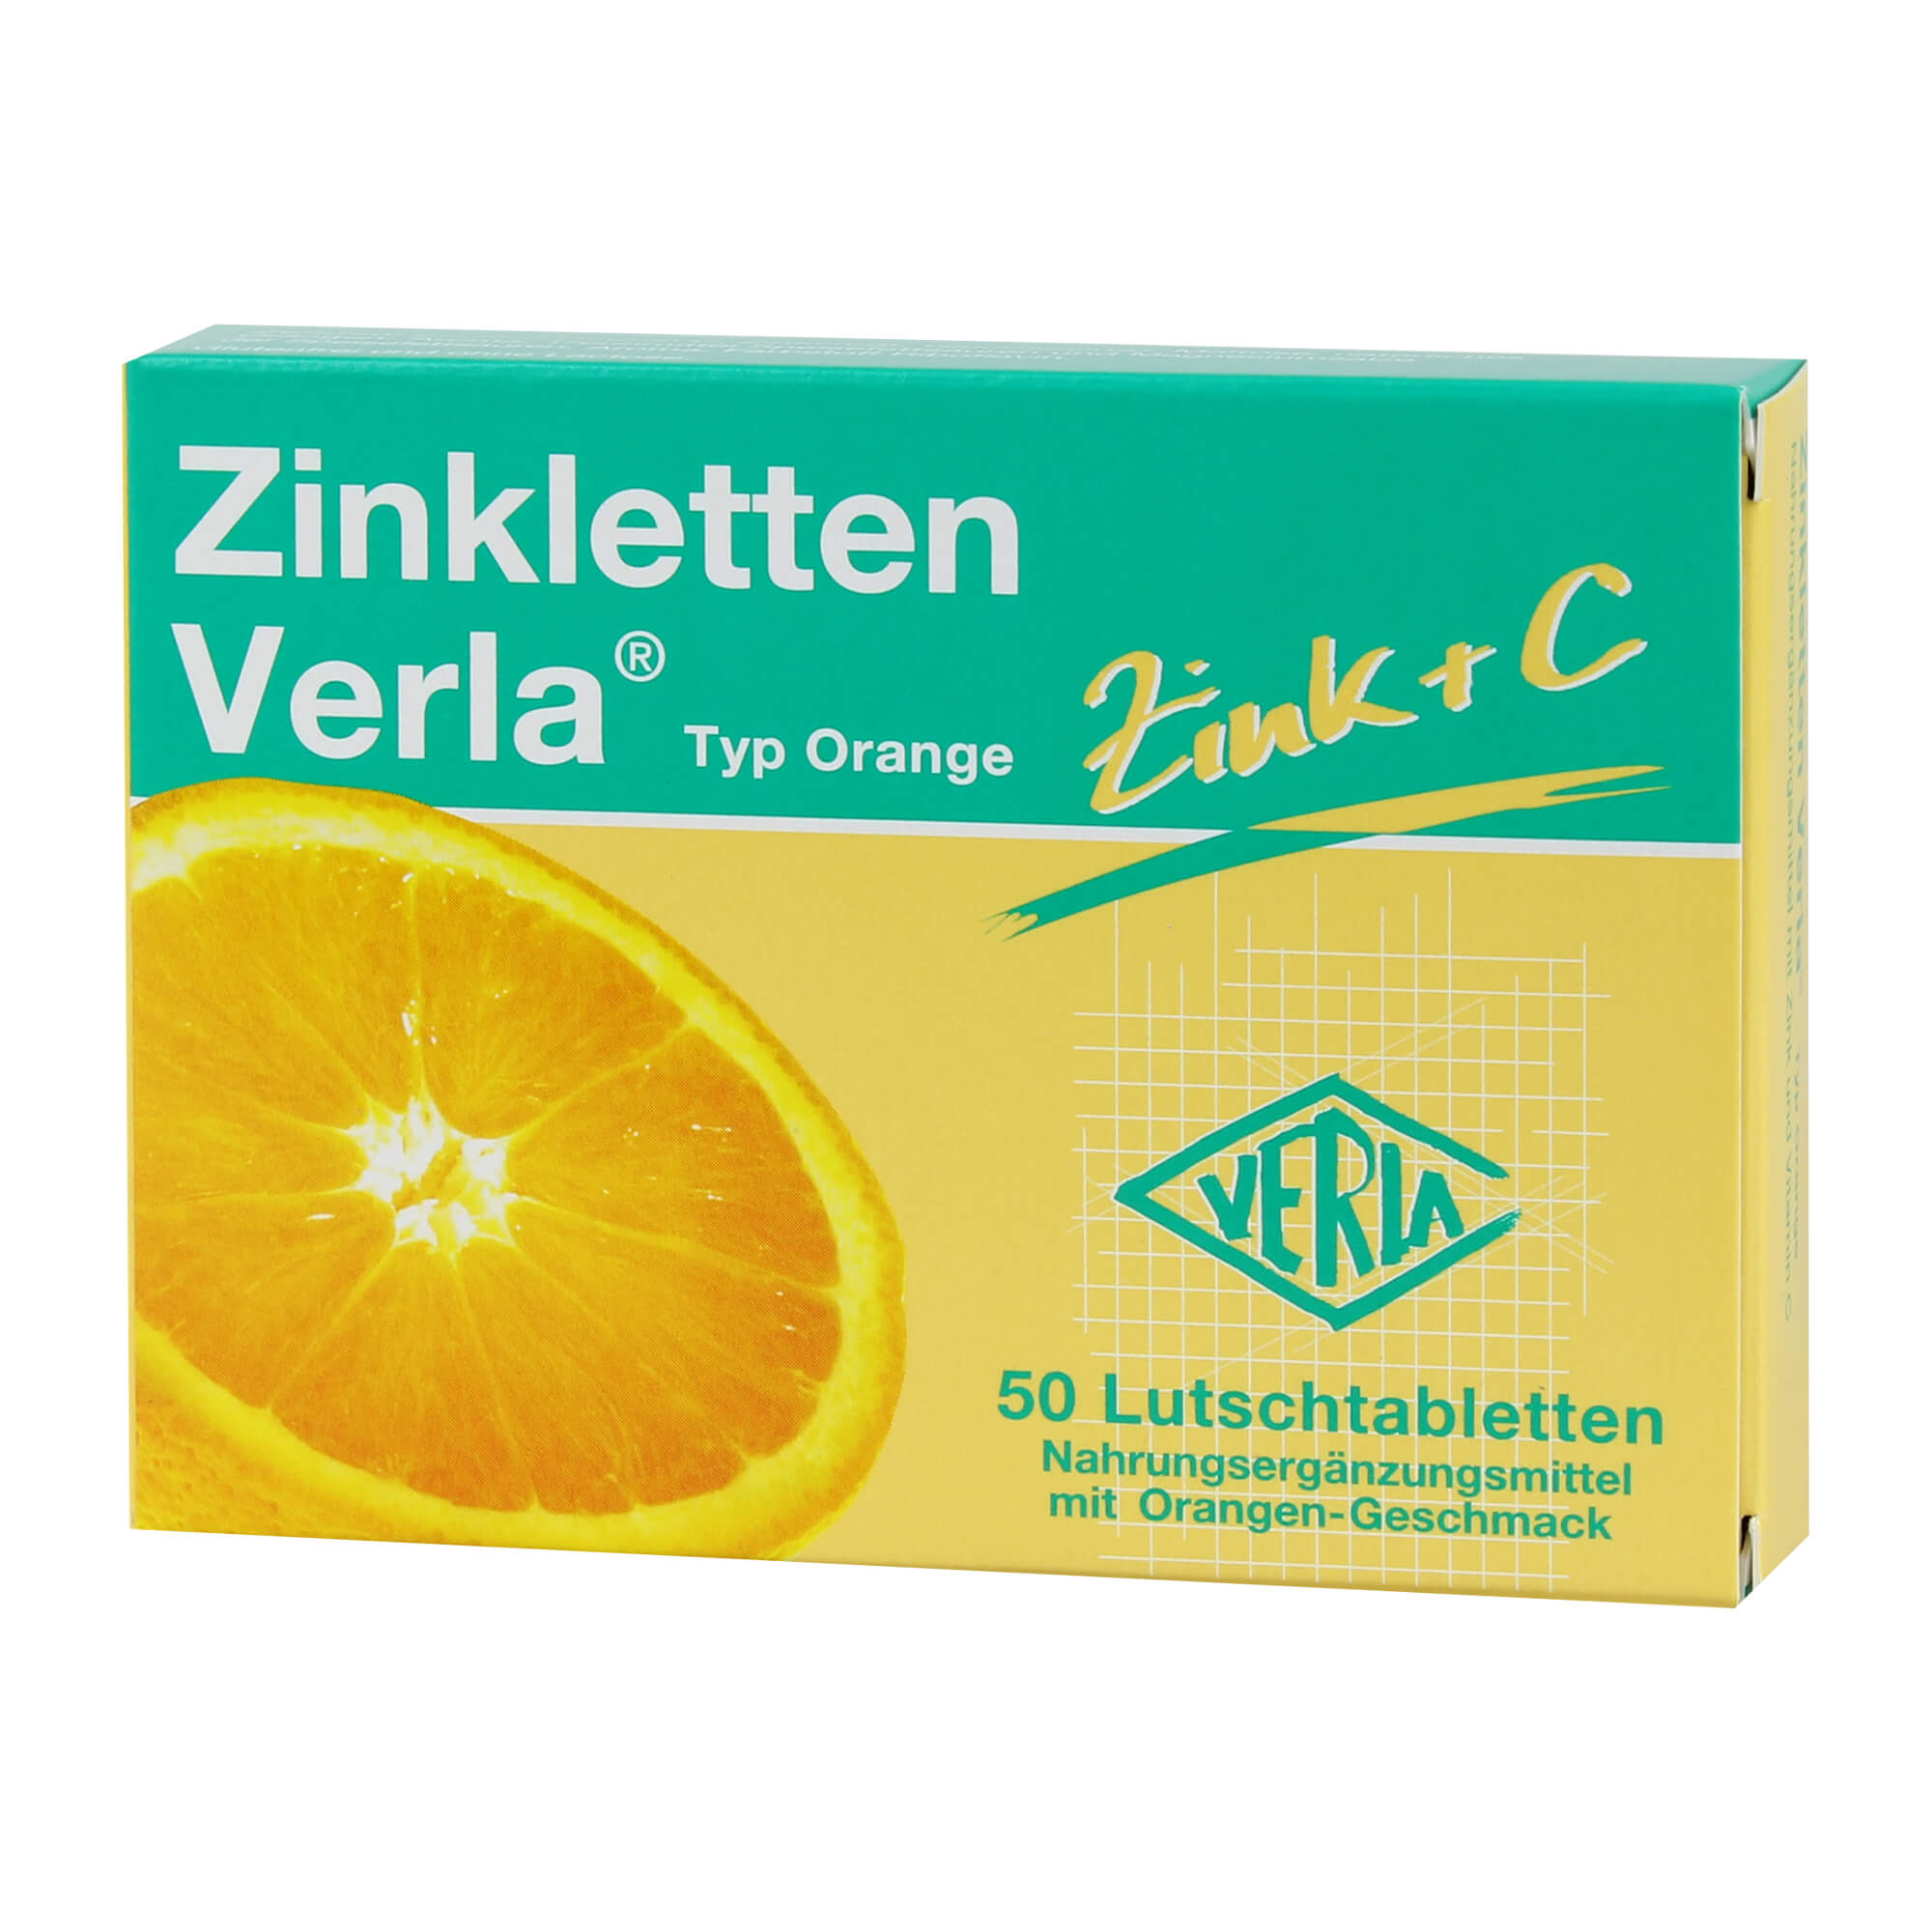 Nahrungsergänzungsmittel mit Zink und Vitamin C. Mit Orangengeschmack.